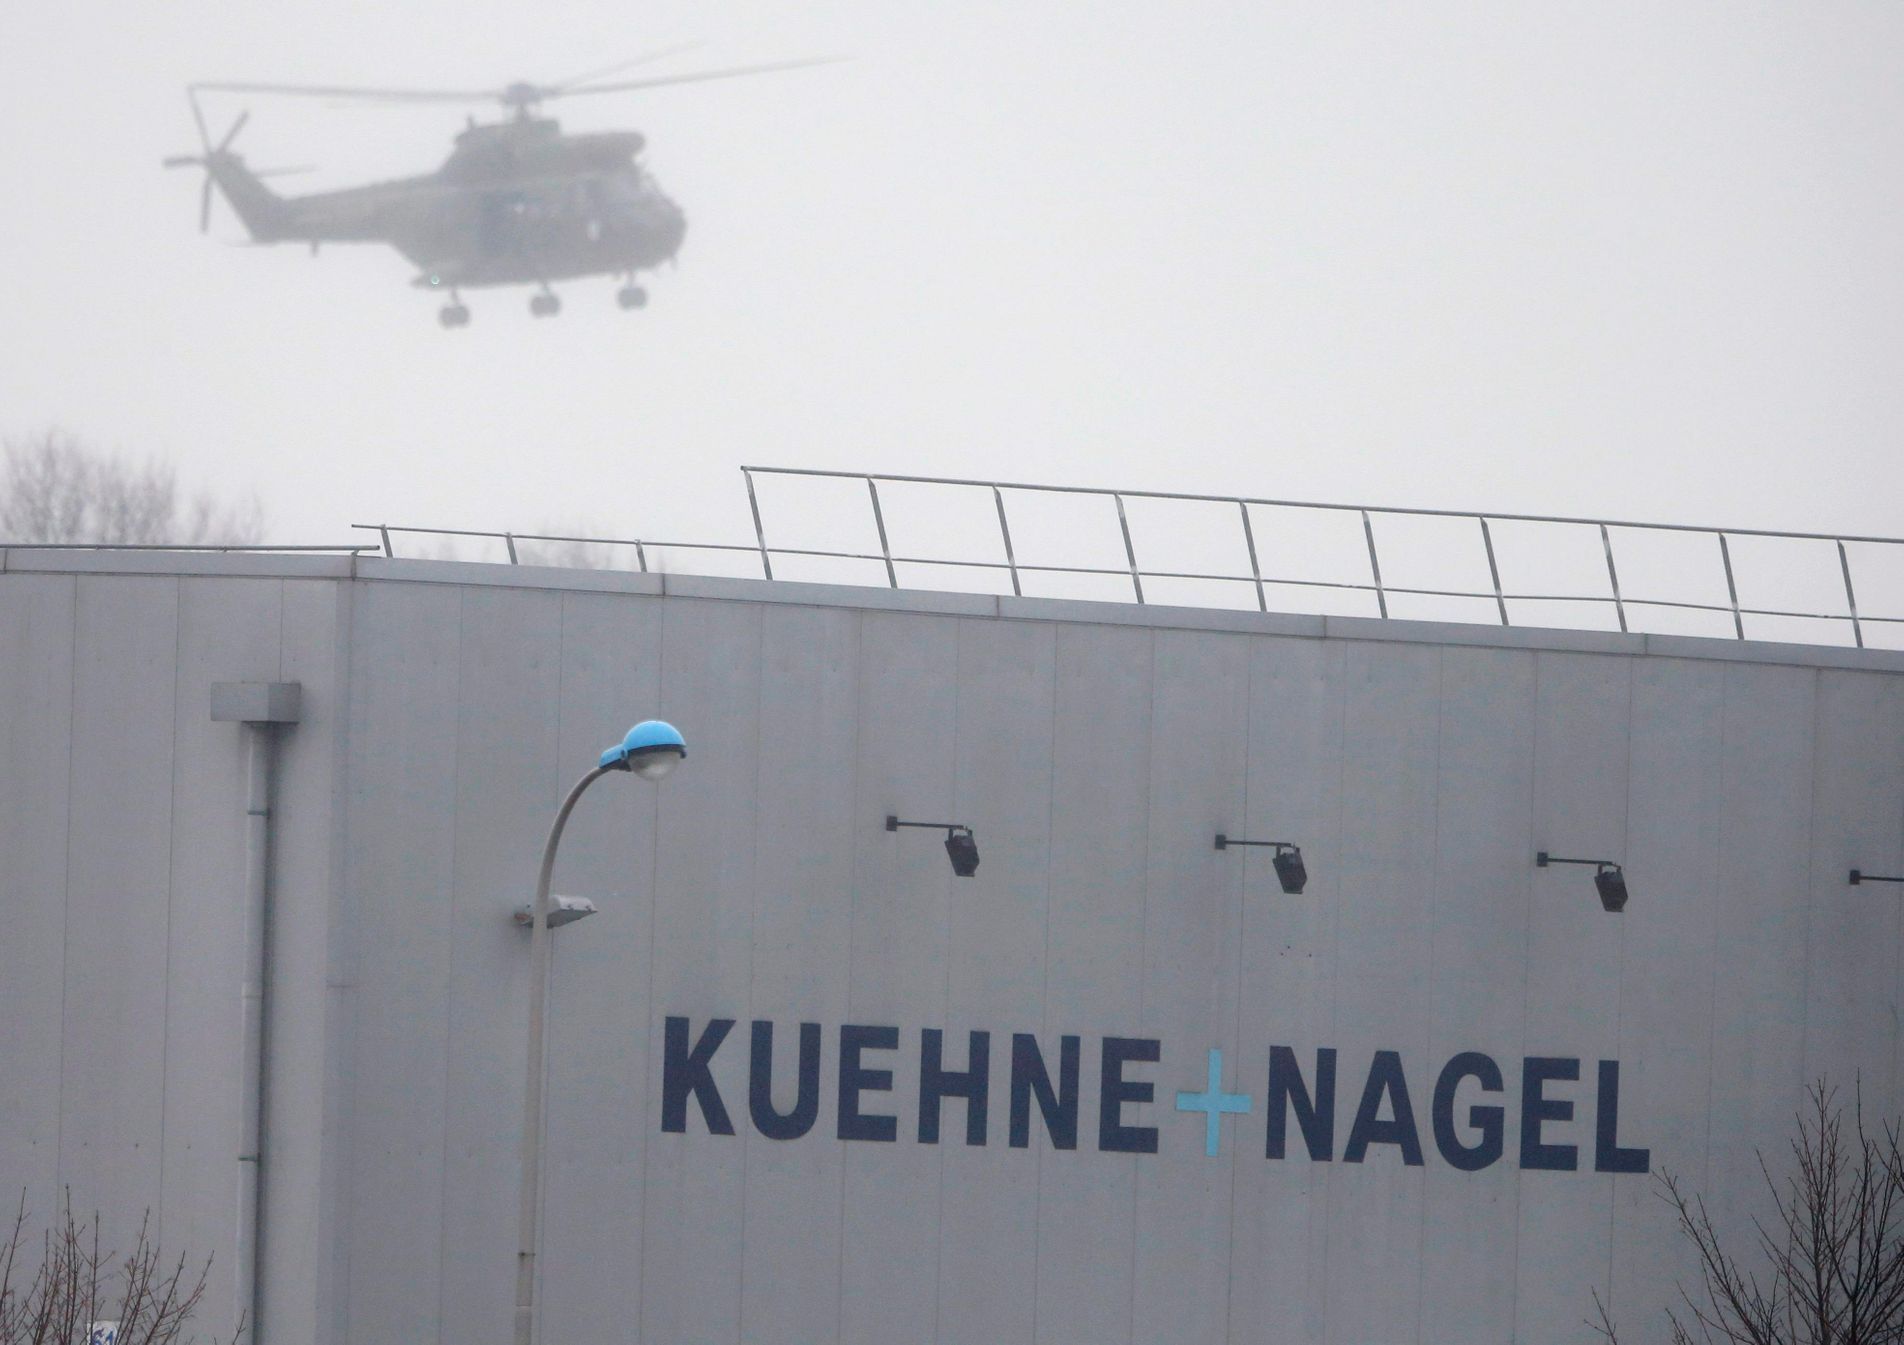 Hon na teroristy - vrtulník nad Dammartin-en-Goele